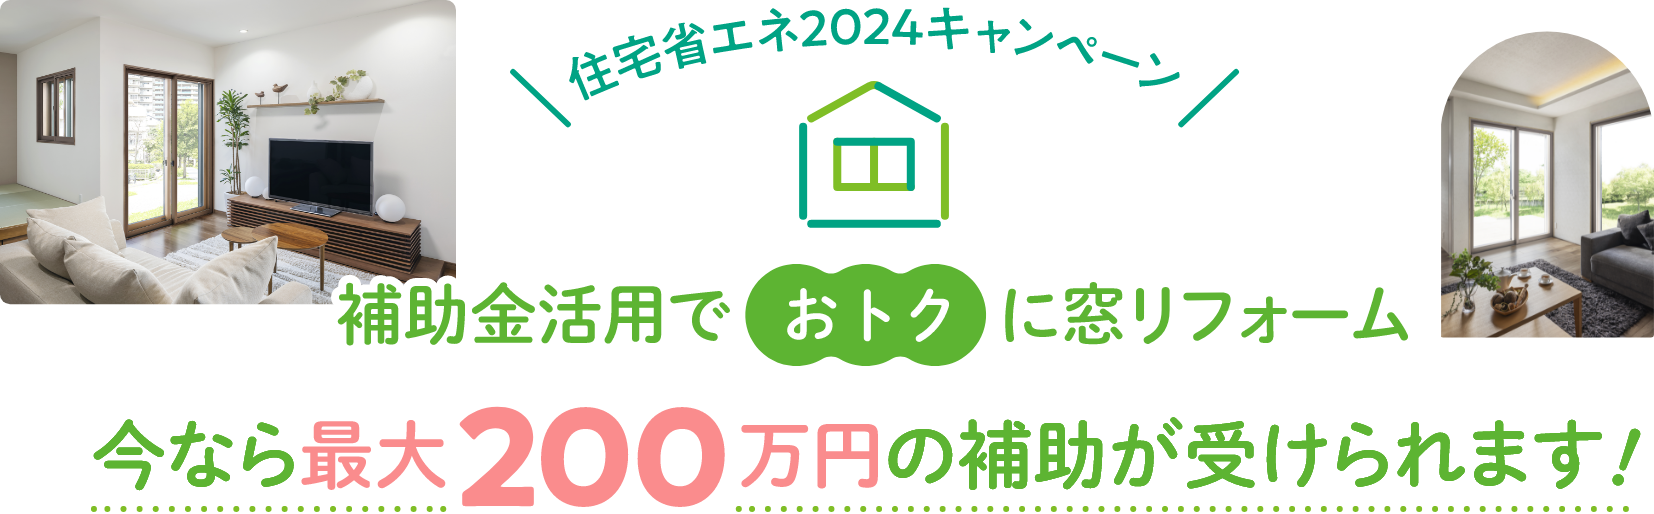 住宅省エネ2024キャンペーン 補助金活用でおトクに窓リフォーム 今なら最大200万円の補助が受けられます。